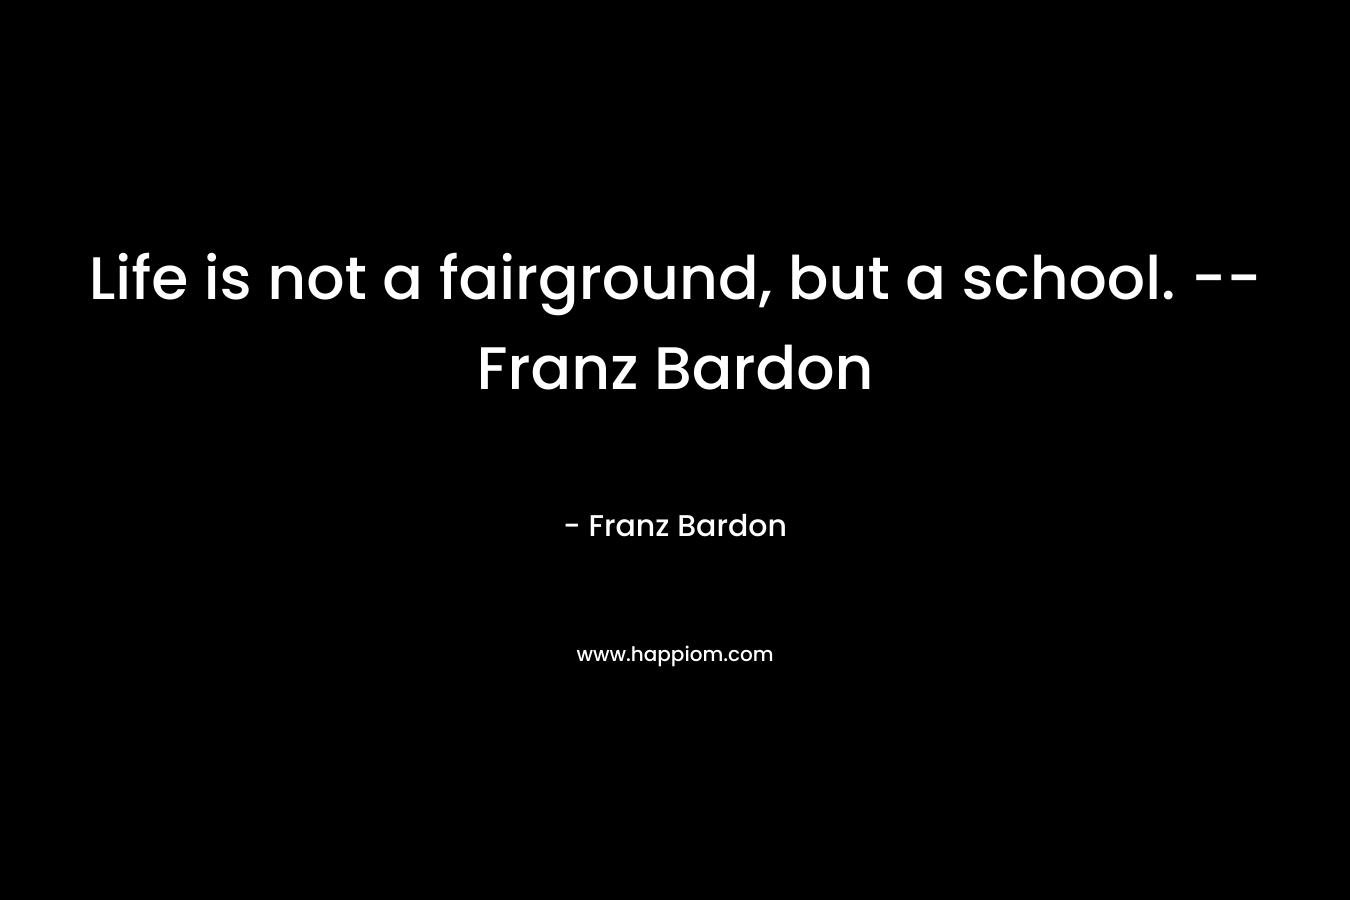 Life is not a fairground, but a school. -- Franz Bardon